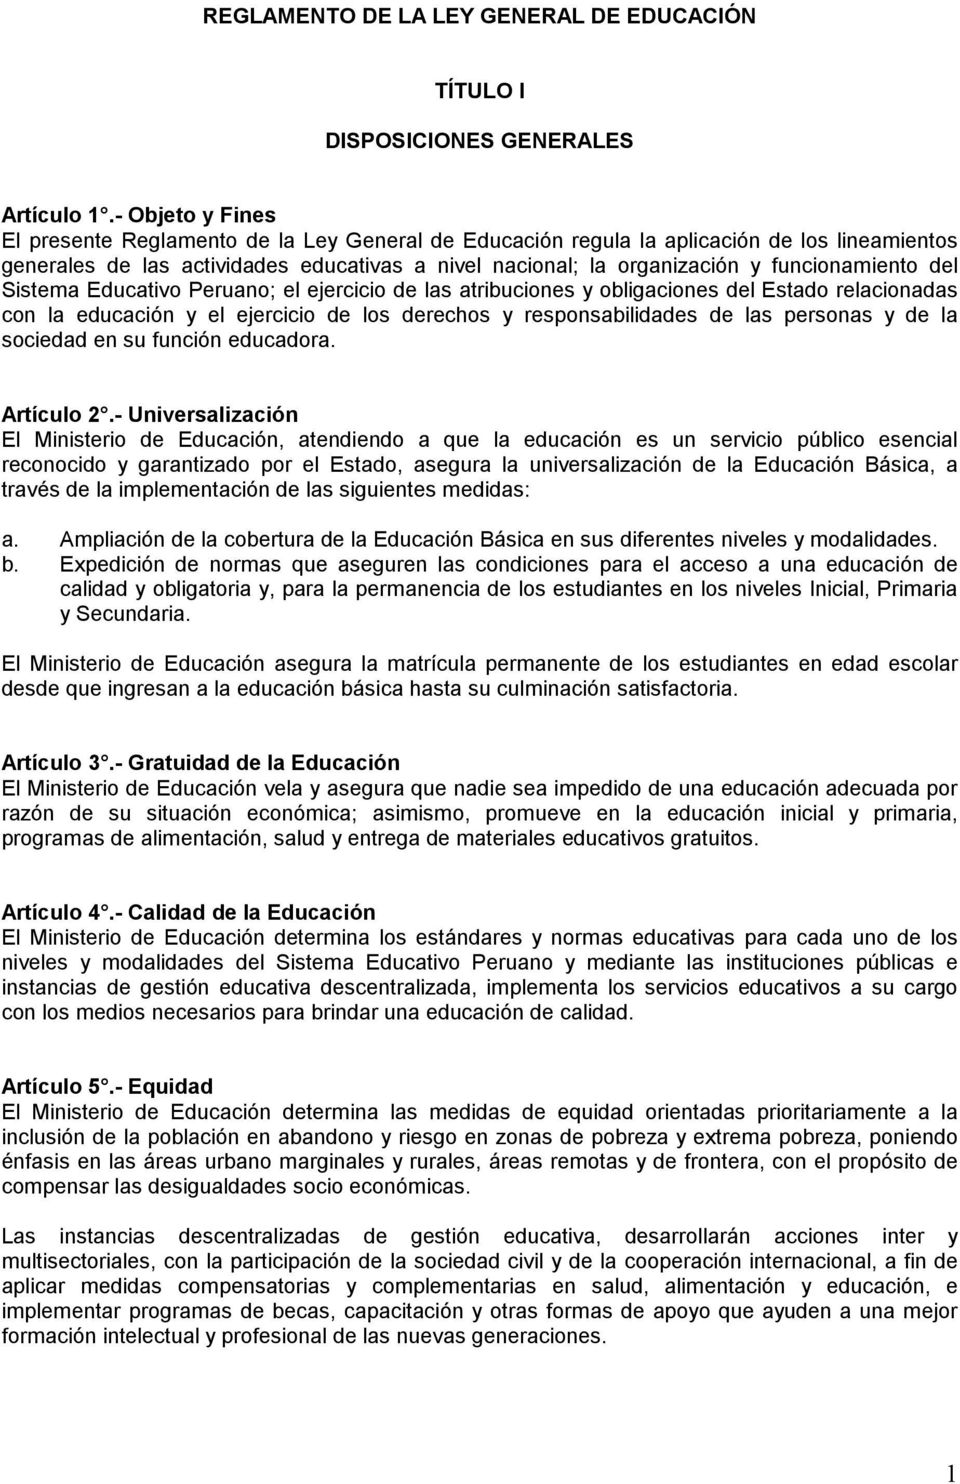 funcionamiento del Sistema Educativo Peruano; el ejercicio de las atribuciones y obligaciones del Estado relacionadas con la educación y el ejercicio de los derechos y responsabilidades de las